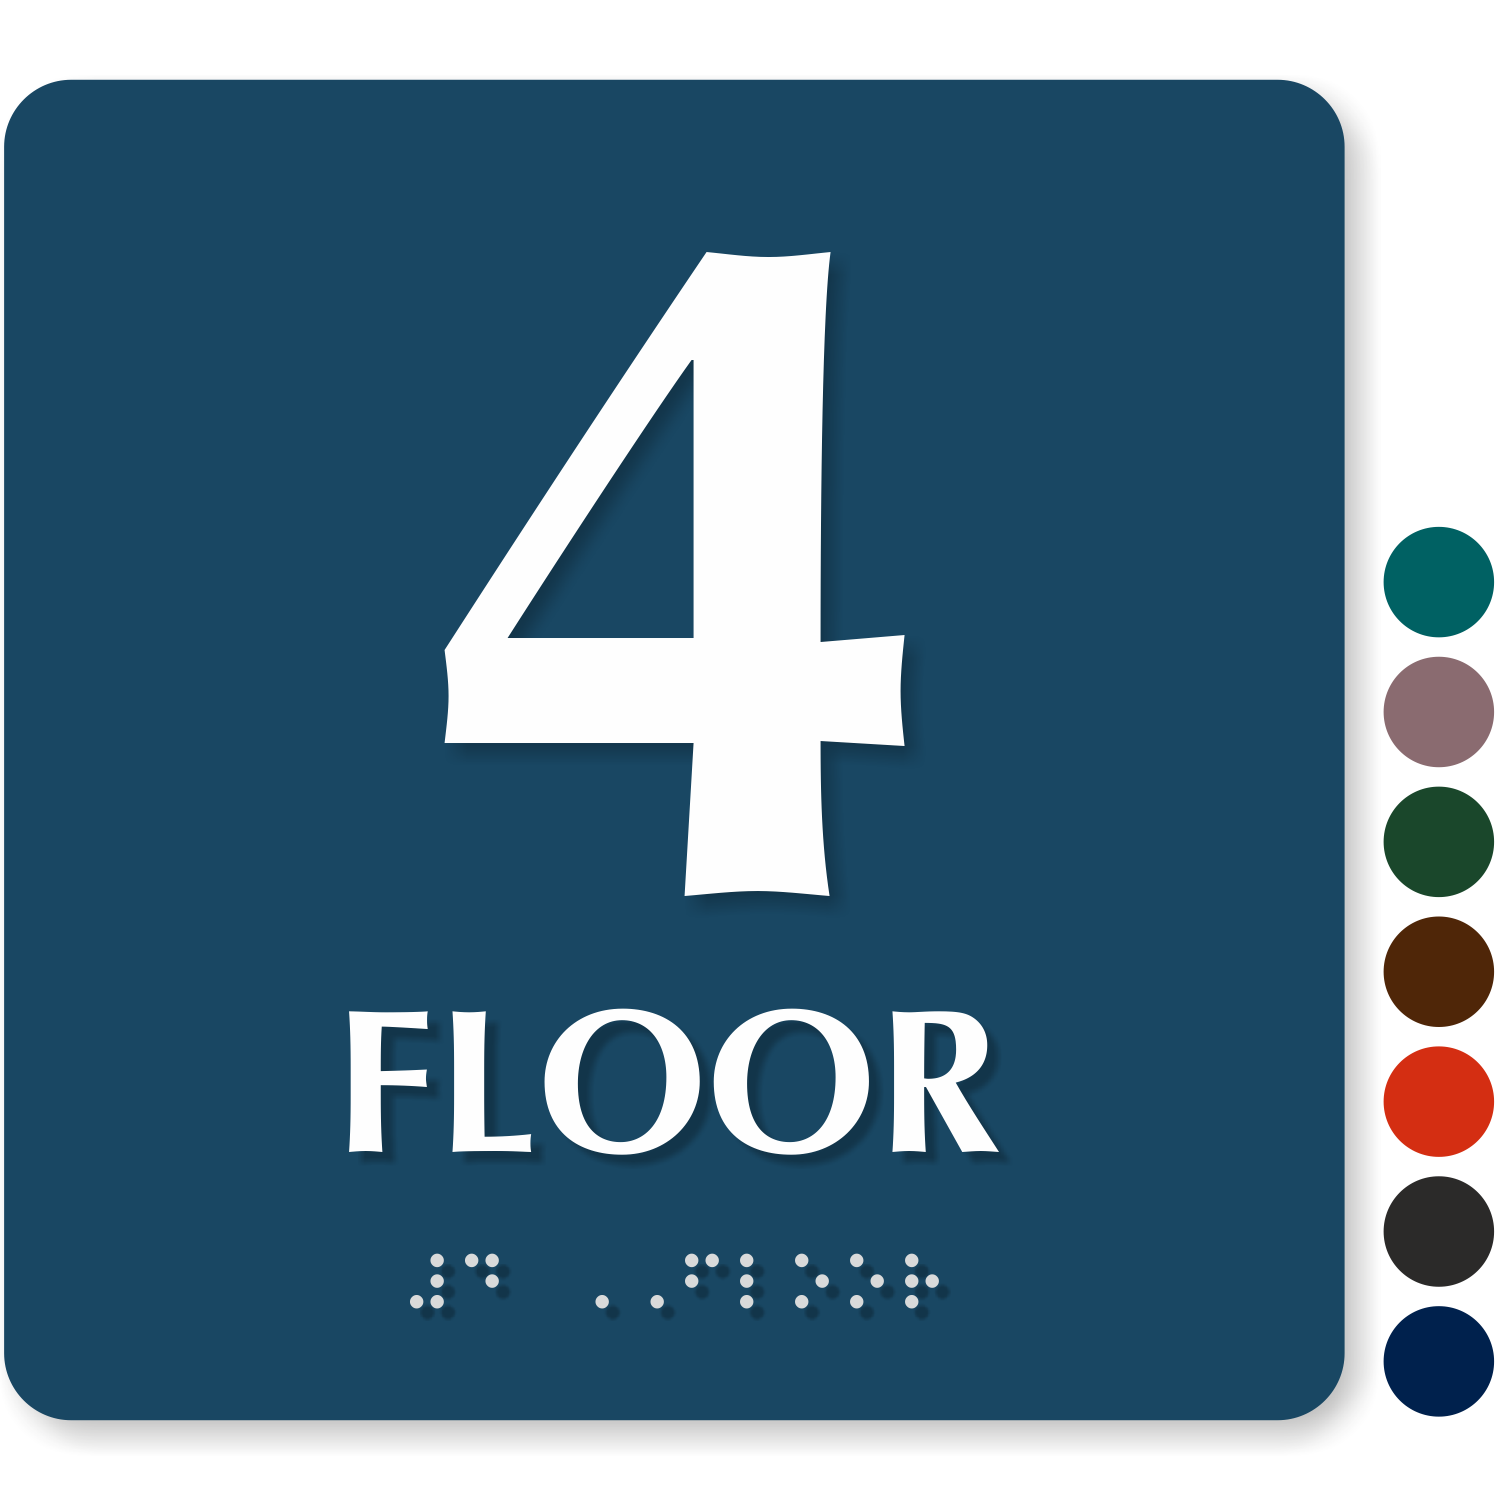 Number of floors